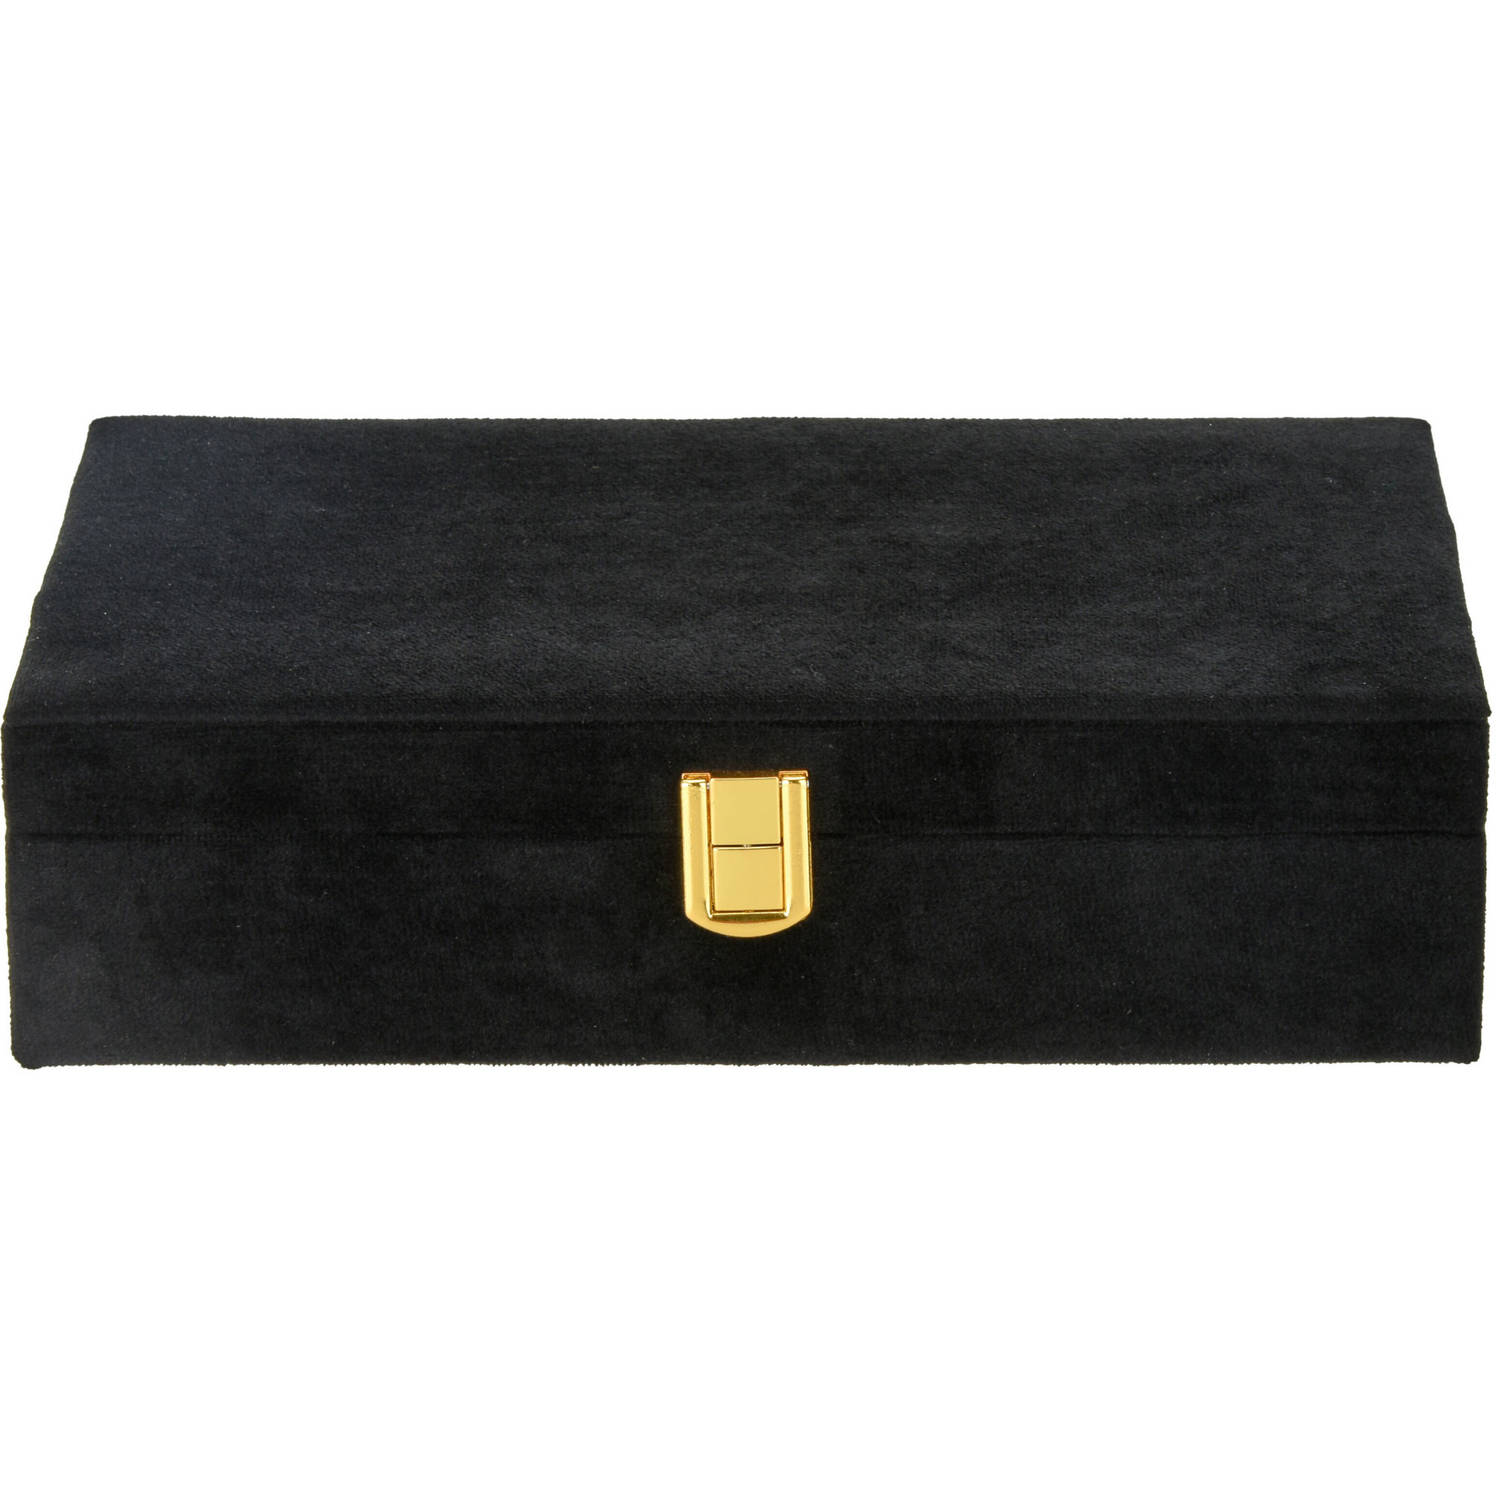 Ter ere van Bijwonen Mew Mew Luxe sieradenbox/juwelendoos zwart fluweel 28 x 19 x 7 cm - Sieradendozen |  Blokker